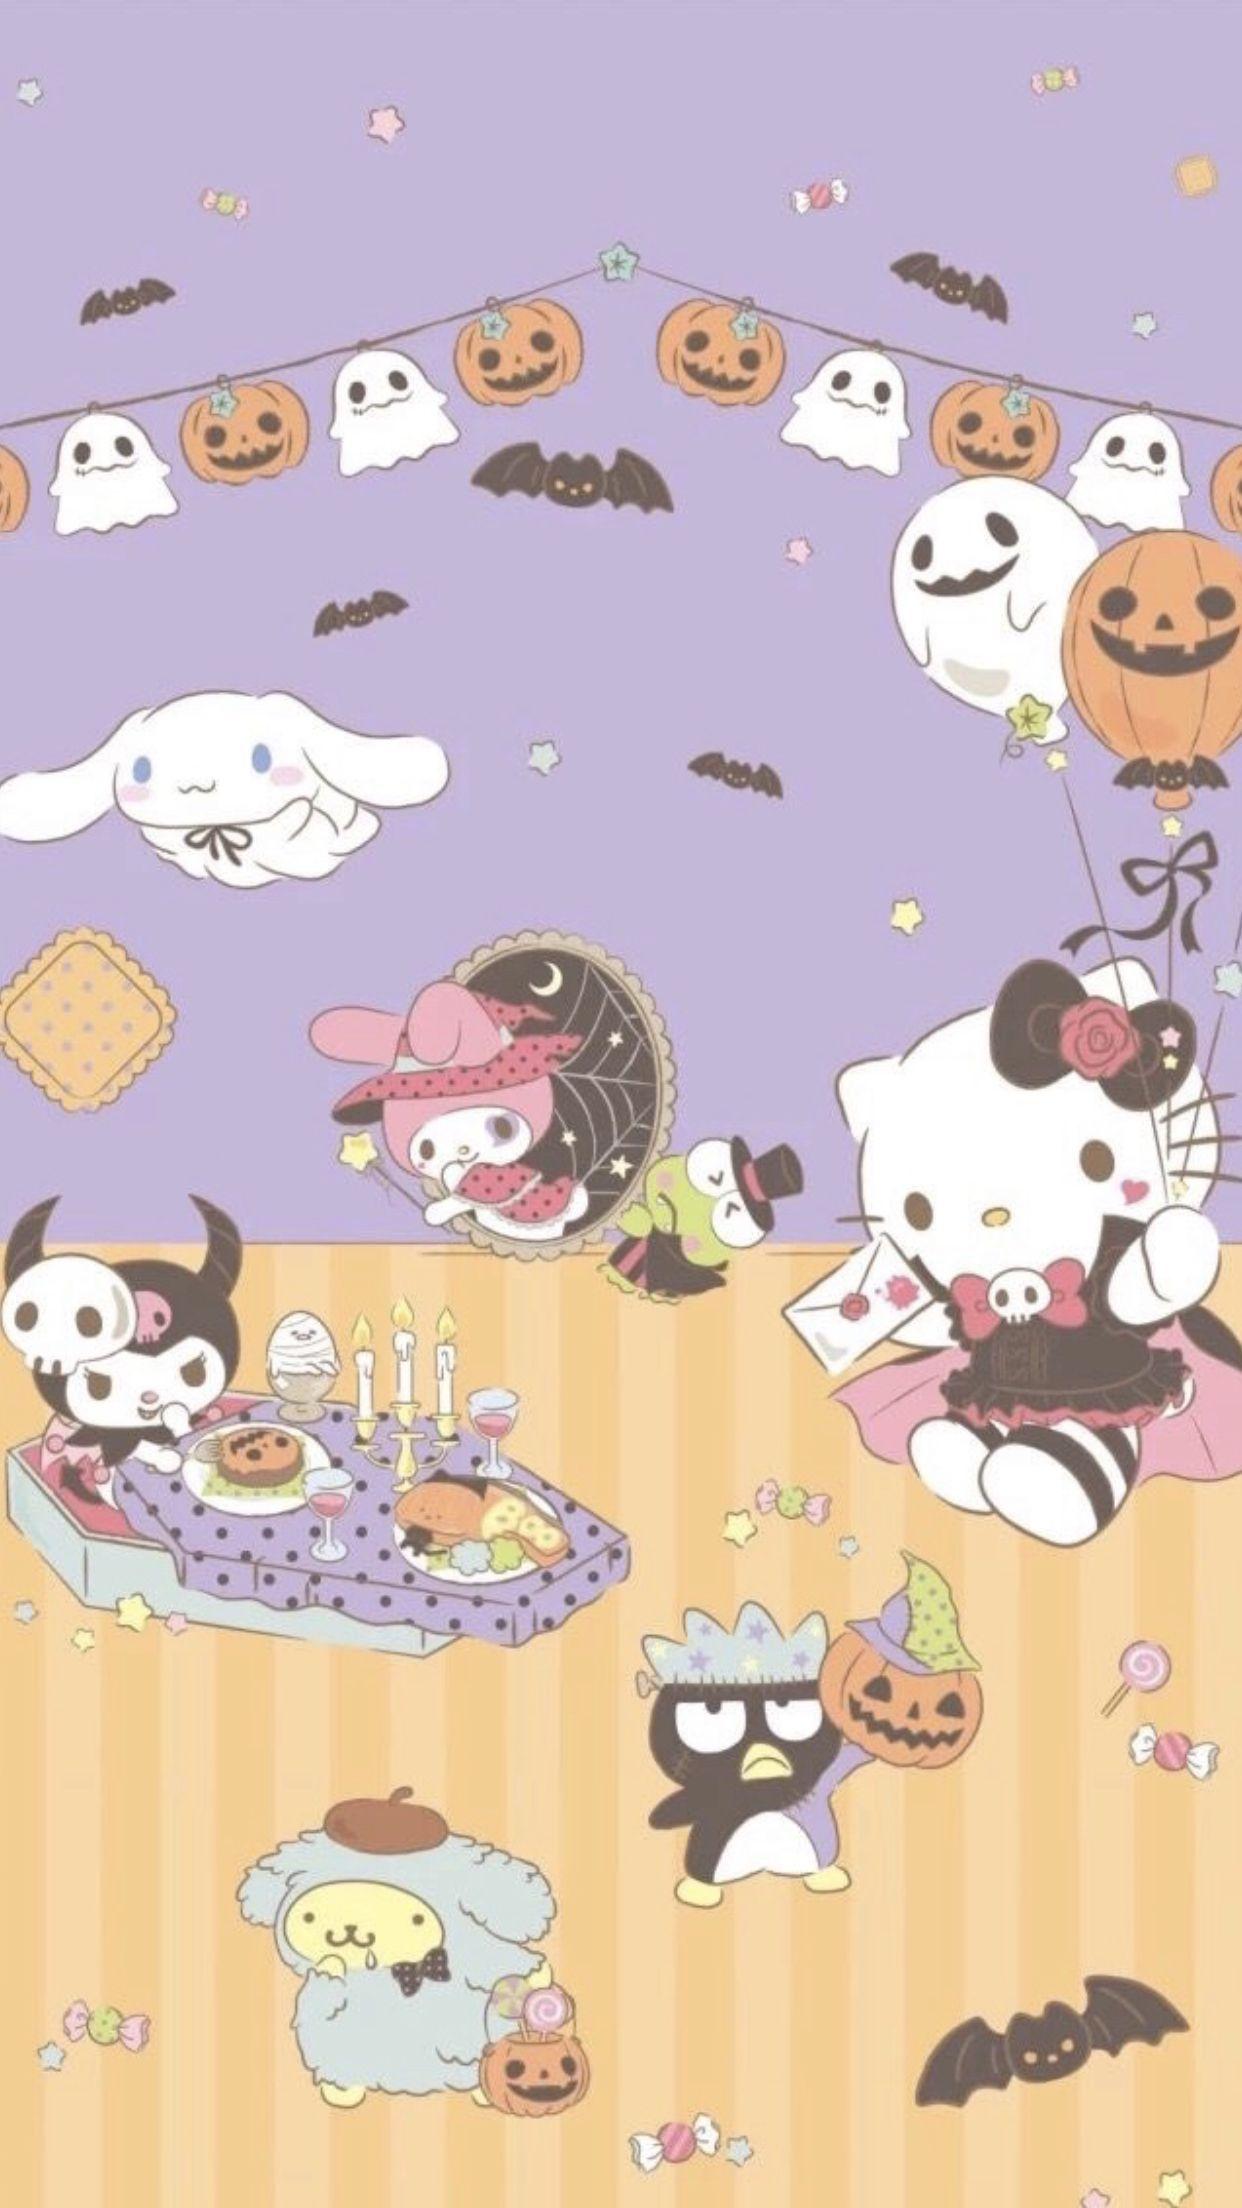 cupcake   on Twitter halloween themed hello kitty  sanrio wallpapers  lt3 httpstco8nIGEhYDTa  Twitter